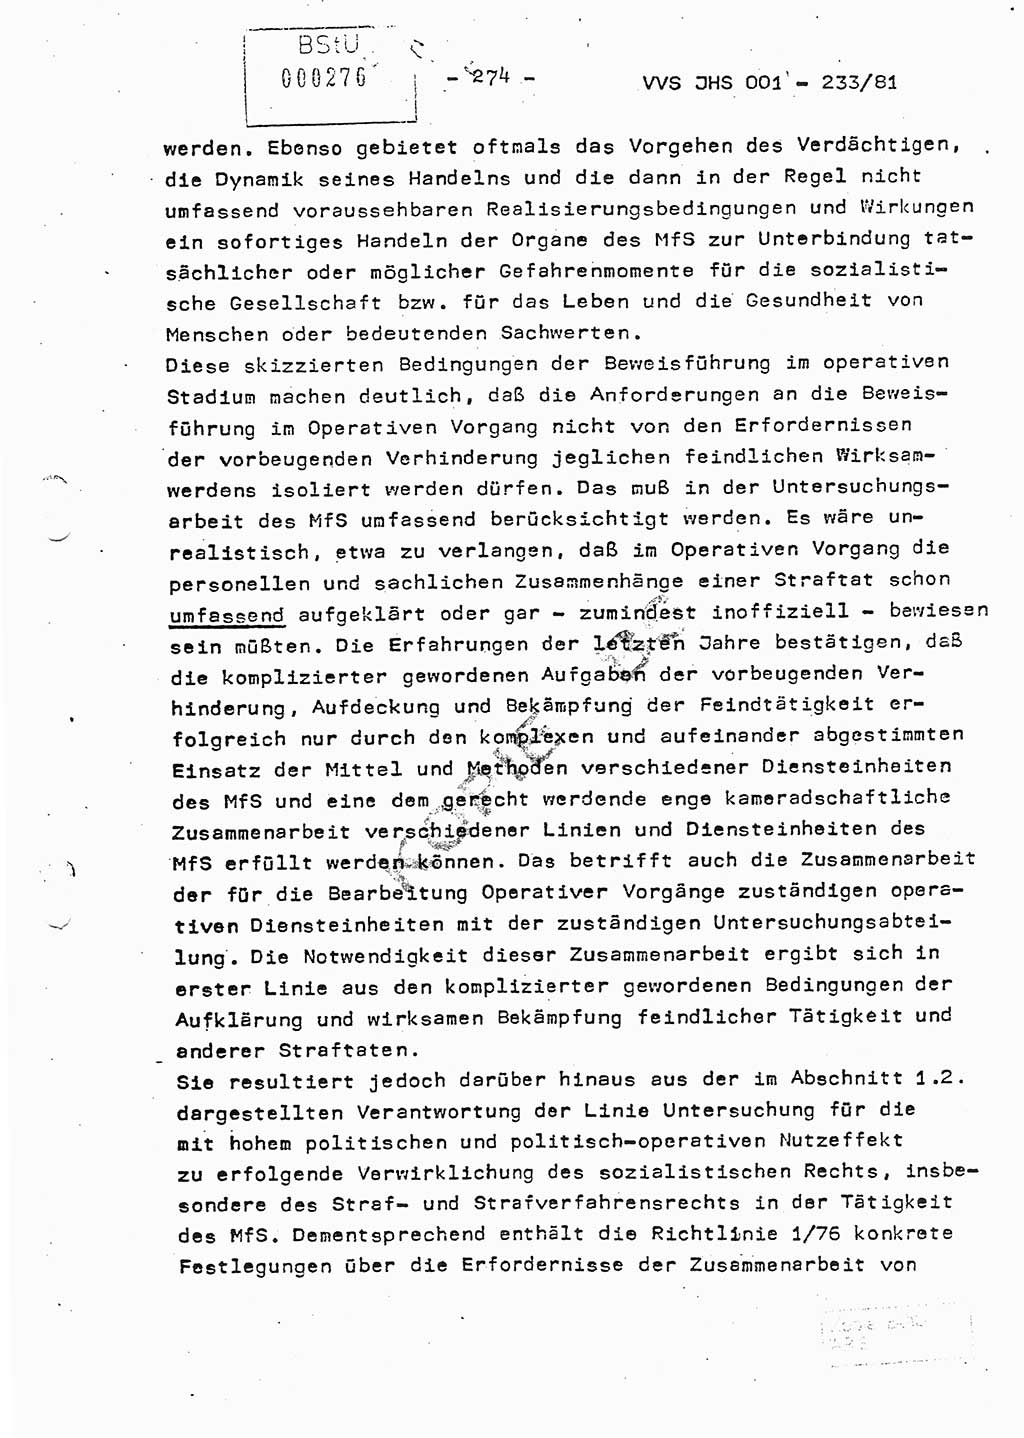 Dissertation Oberstleutnant Horst Zank (JHS), Oberstleutnant Dr. Karl-Heinz Knoblauch (JHS), Oberstleutnant Gustav-Adolf Kowalewski (HA Ⅸ), Oberstleutnant Wolfgang Plötner (HA Ⅸ), Ministerium für Staatssicherheit (MfS) [Deutsche Demokratische Republik (DDR)], Juristische Hochschule (JHS), Vertrauliche Verschlußsache (VVS) o001-233/81, Potsdam 1981, Blatt 274 (Diss. MfS DDR JHS VVS o001-233/81 1981, Bl. 274)